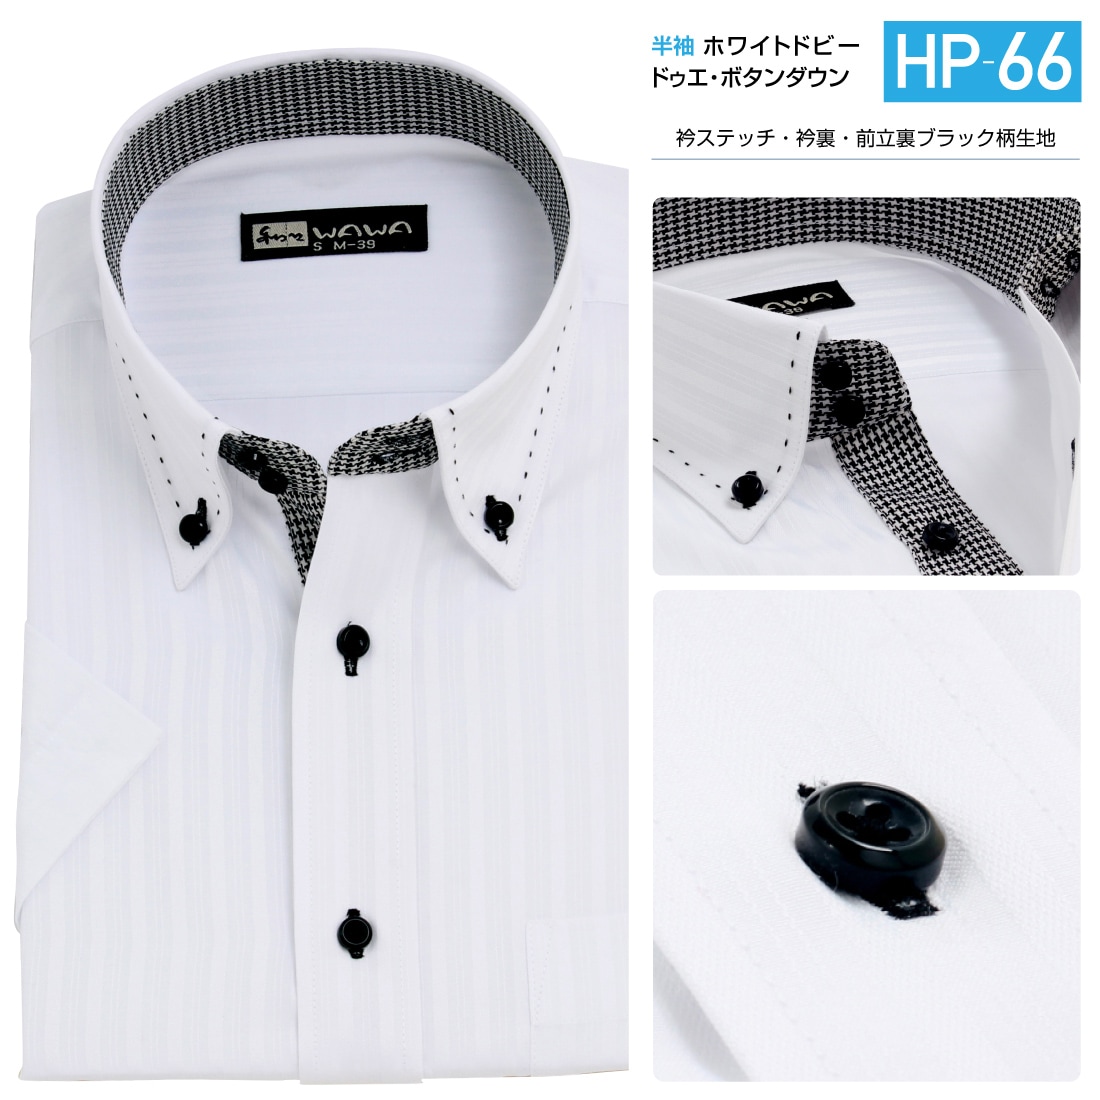 半袖 メンズ ドビー ホワイト ワイシャツ ボタンダウン ドウェ 形態安定 白 Yシャツ ビジネス 6サイズ スリム M L 標準体 M L LL  3L から選べる HP-66-WAWAJAPAN